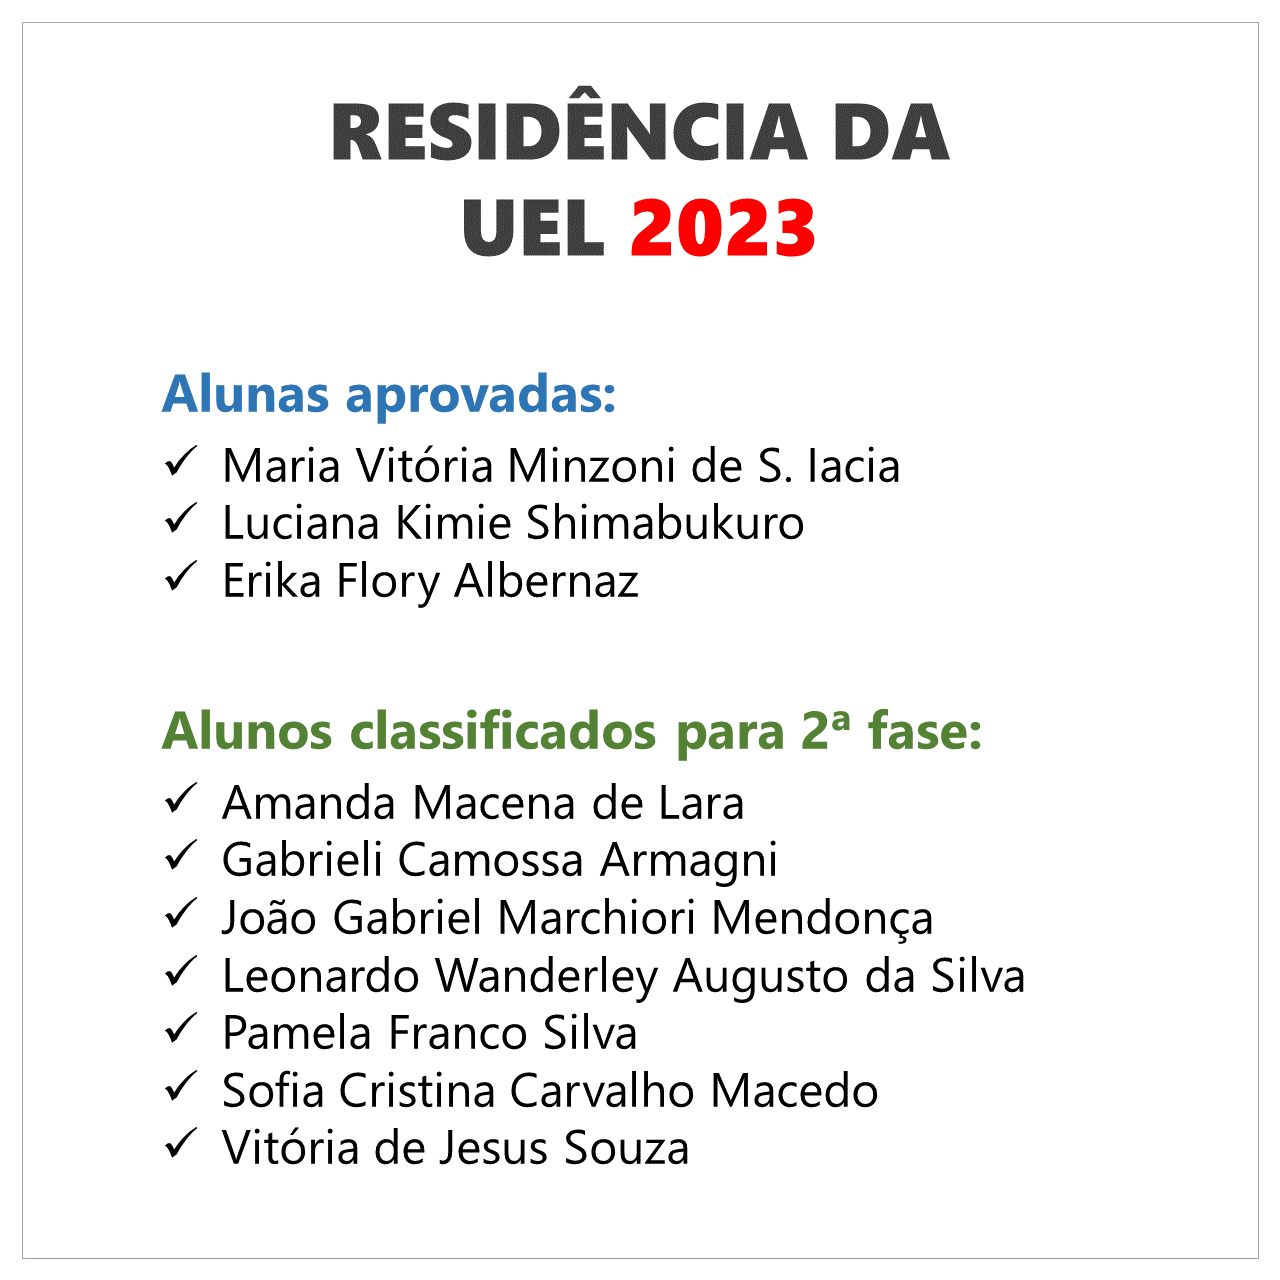 uel 2023